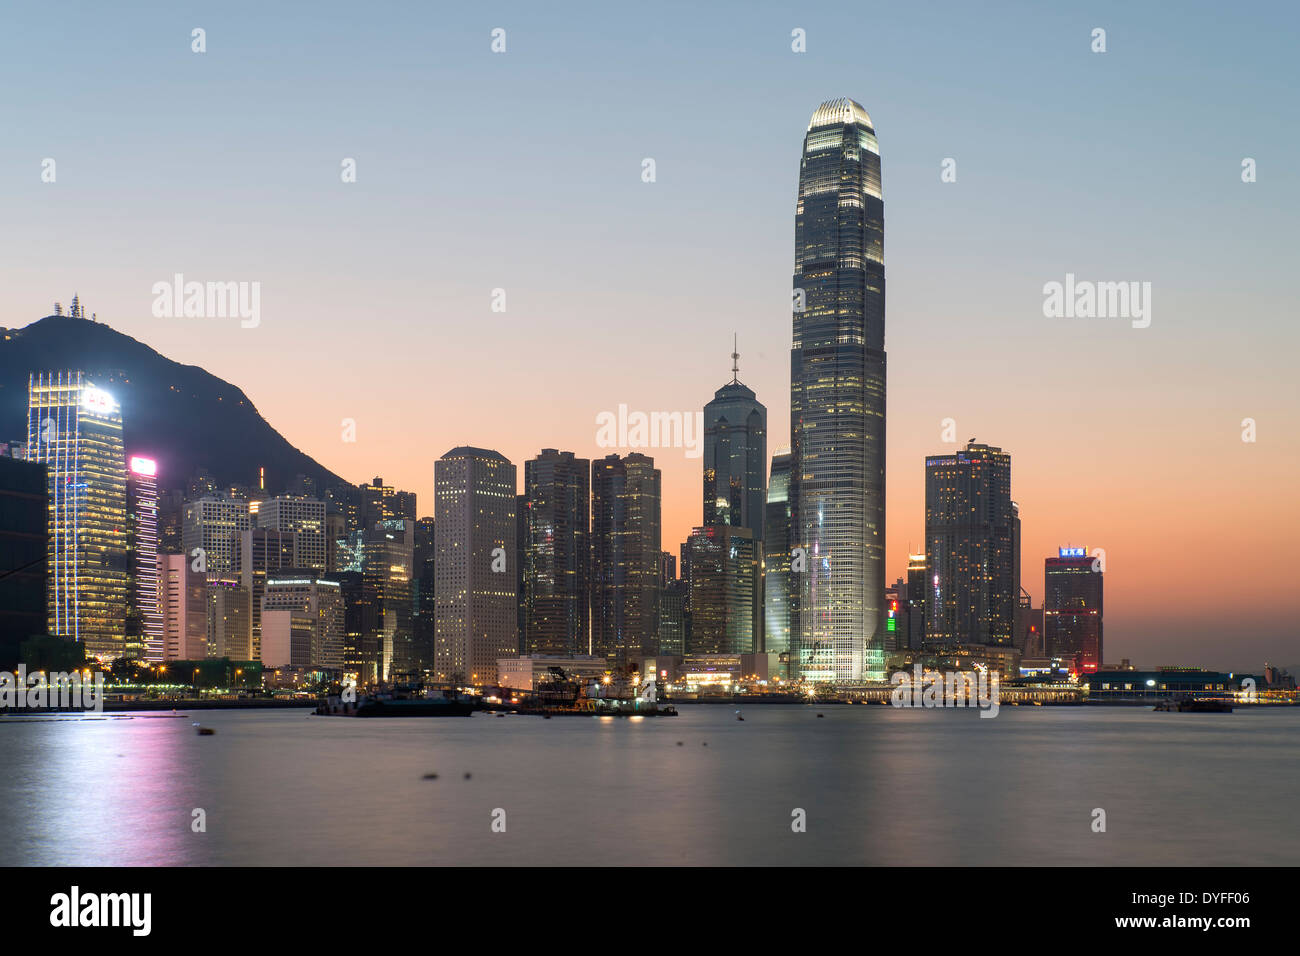 Hong Kong City at Dusk Stock Photo